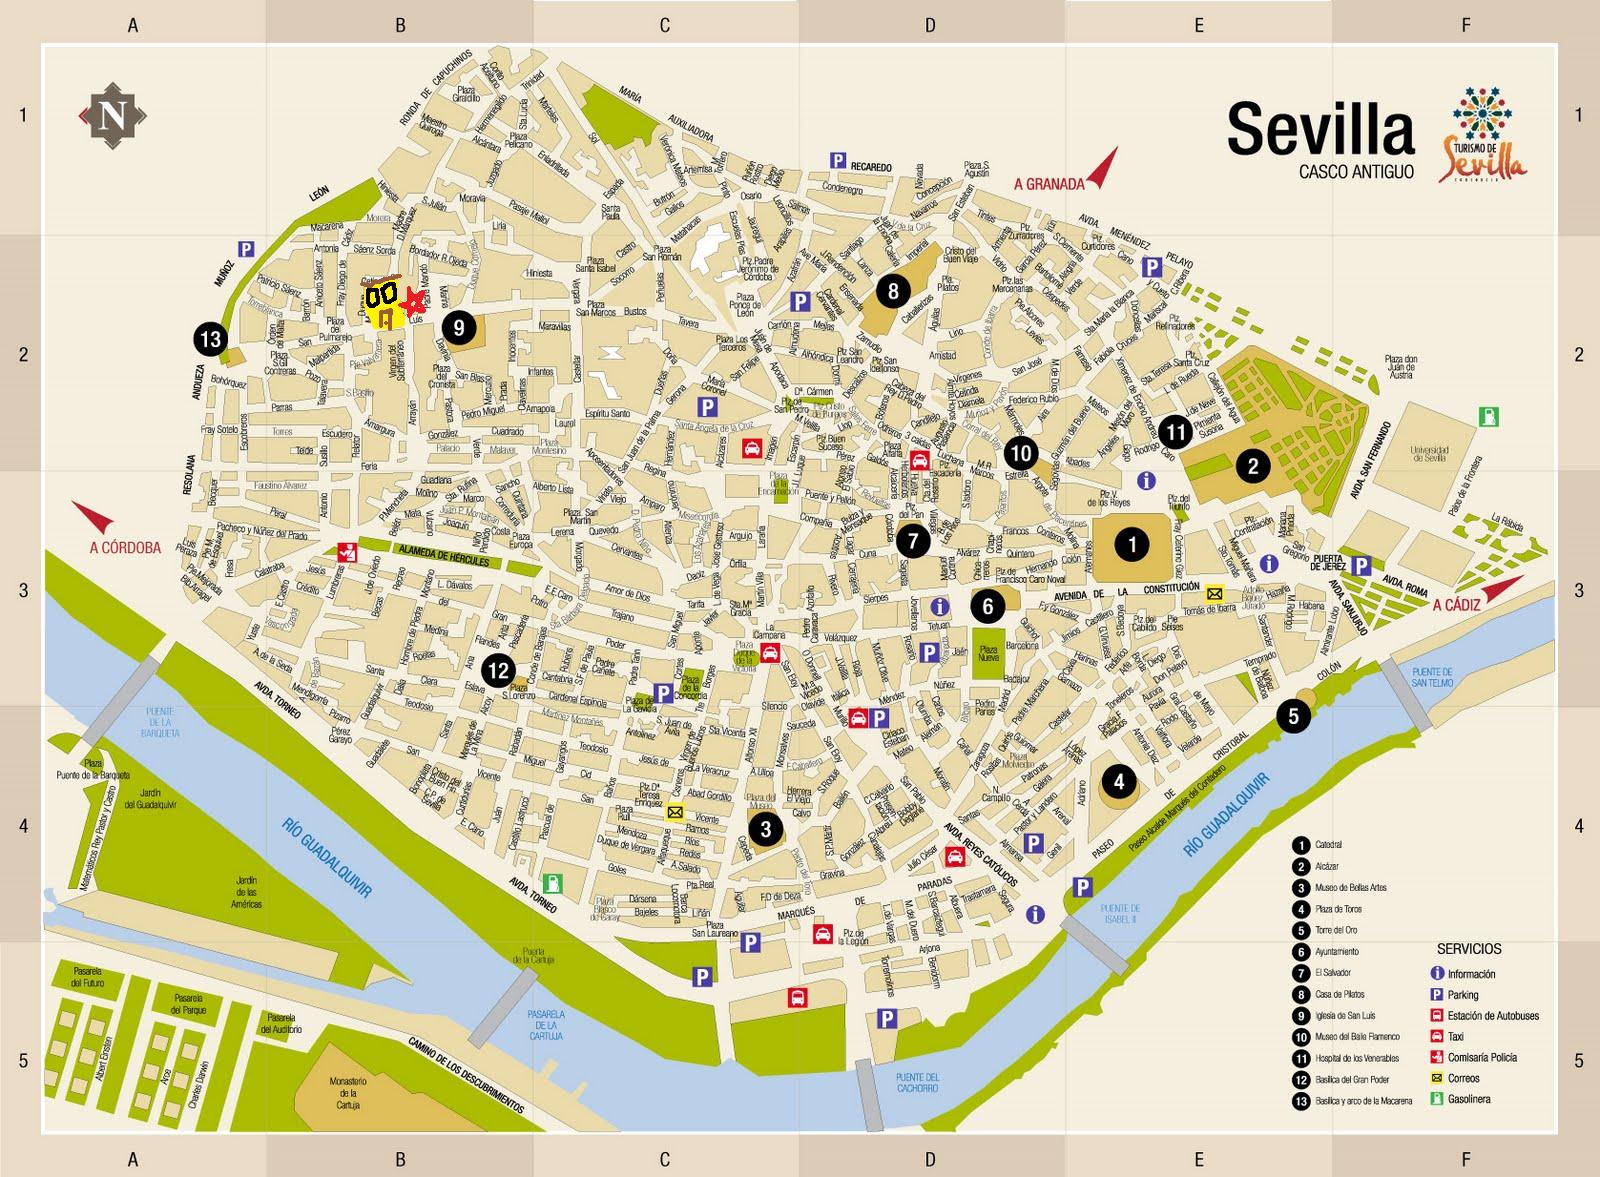 seville tourism board